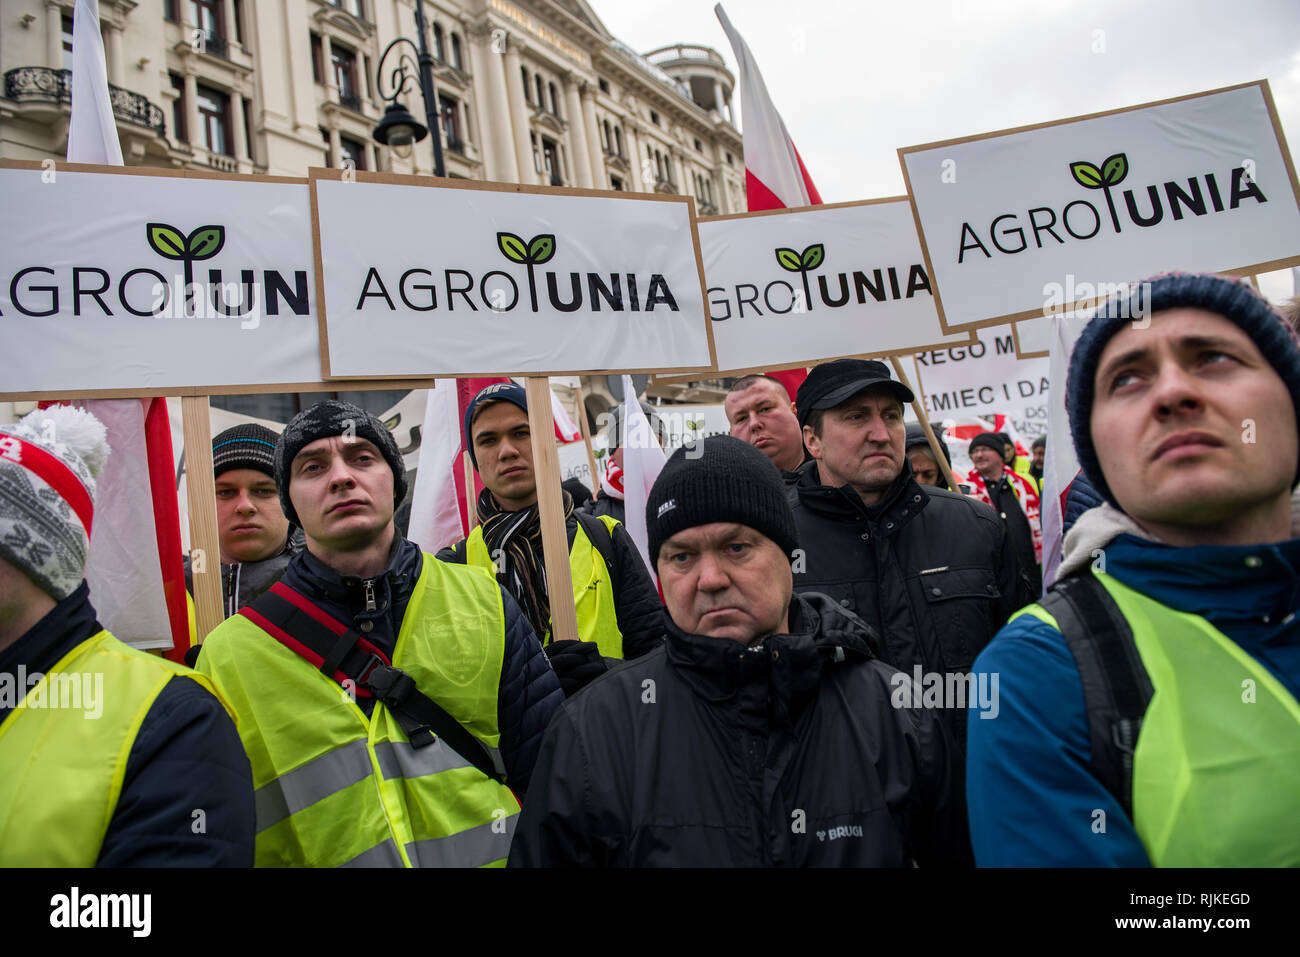 Die polnischen Bauern gesehen werden Plakate während des Protestes. Tausende von Bauern aus ganz Polen einen Protest vor dem Präsidentenpalast in Warschau inszeniert, die Rückforderung von verschiedenen Kompensationen, Kontrolle und Einschränkungen über die Einfuhr von landwirtschaftlichen Erzeugnissen sowie eine Erhöhung der Einkaufspreise, die Demonstration wurde von der Agrounia Gruppe gehalten und hatte von den Landwirten als 'Siege von Warschau berechnet worden." die Bauern einen Sarg für den Präsidenten als Symbol für den Tod der polnischen Landwirtschaft. Stockfoto